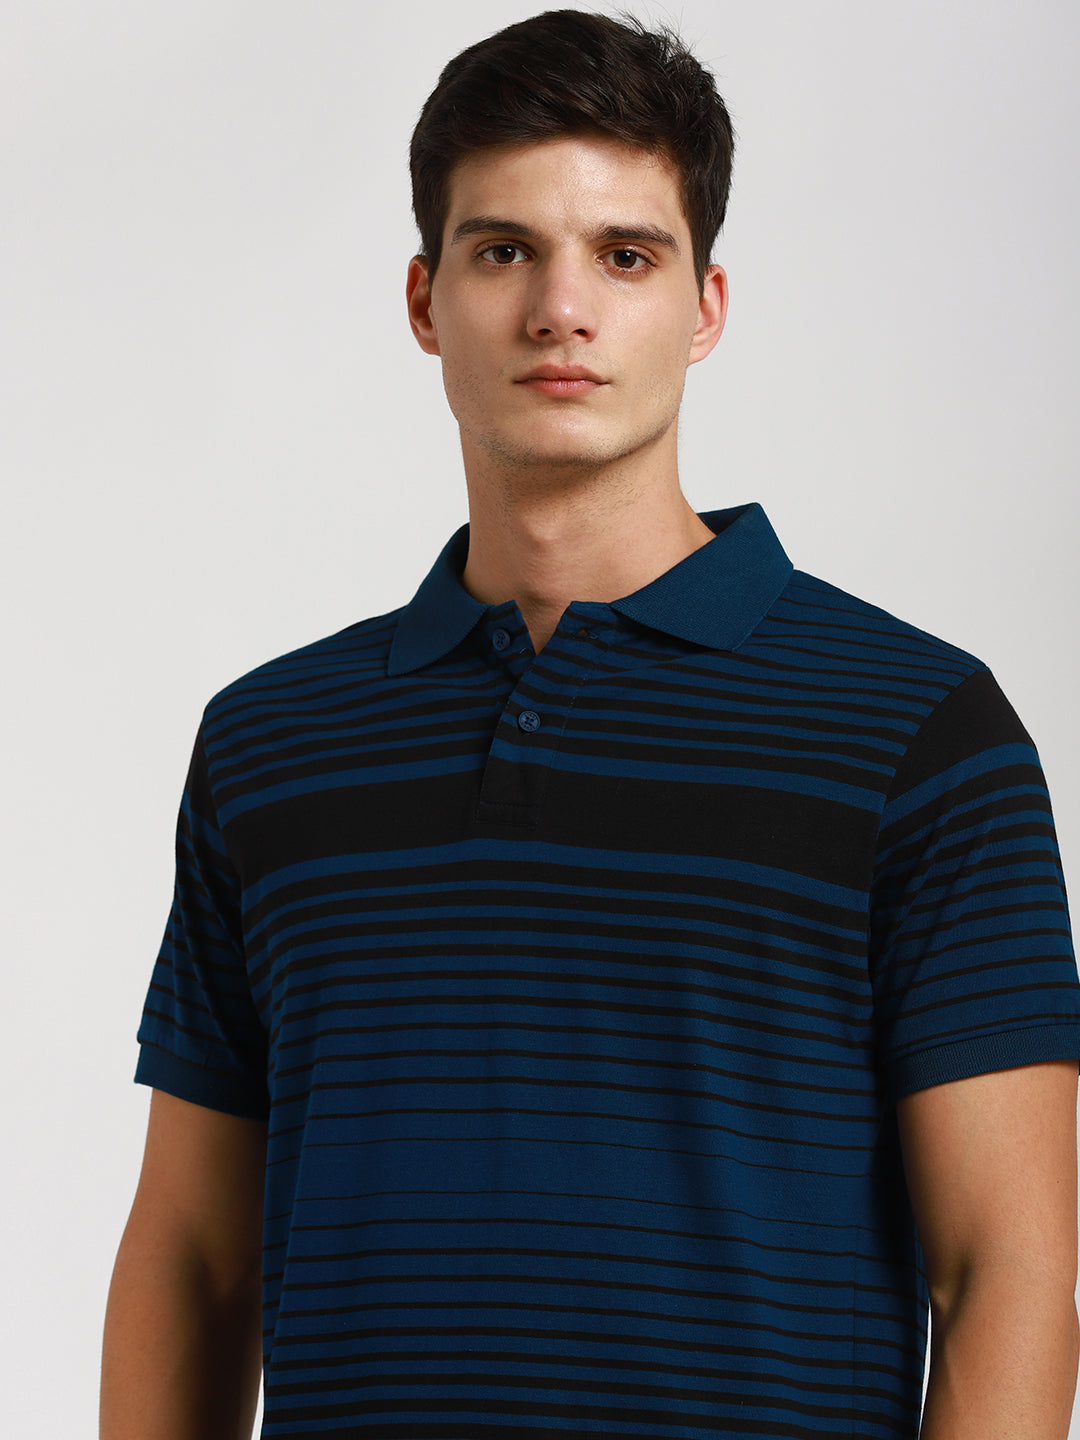 Dennis Lingo Mens's Blue Y/D Stripes T-shirts